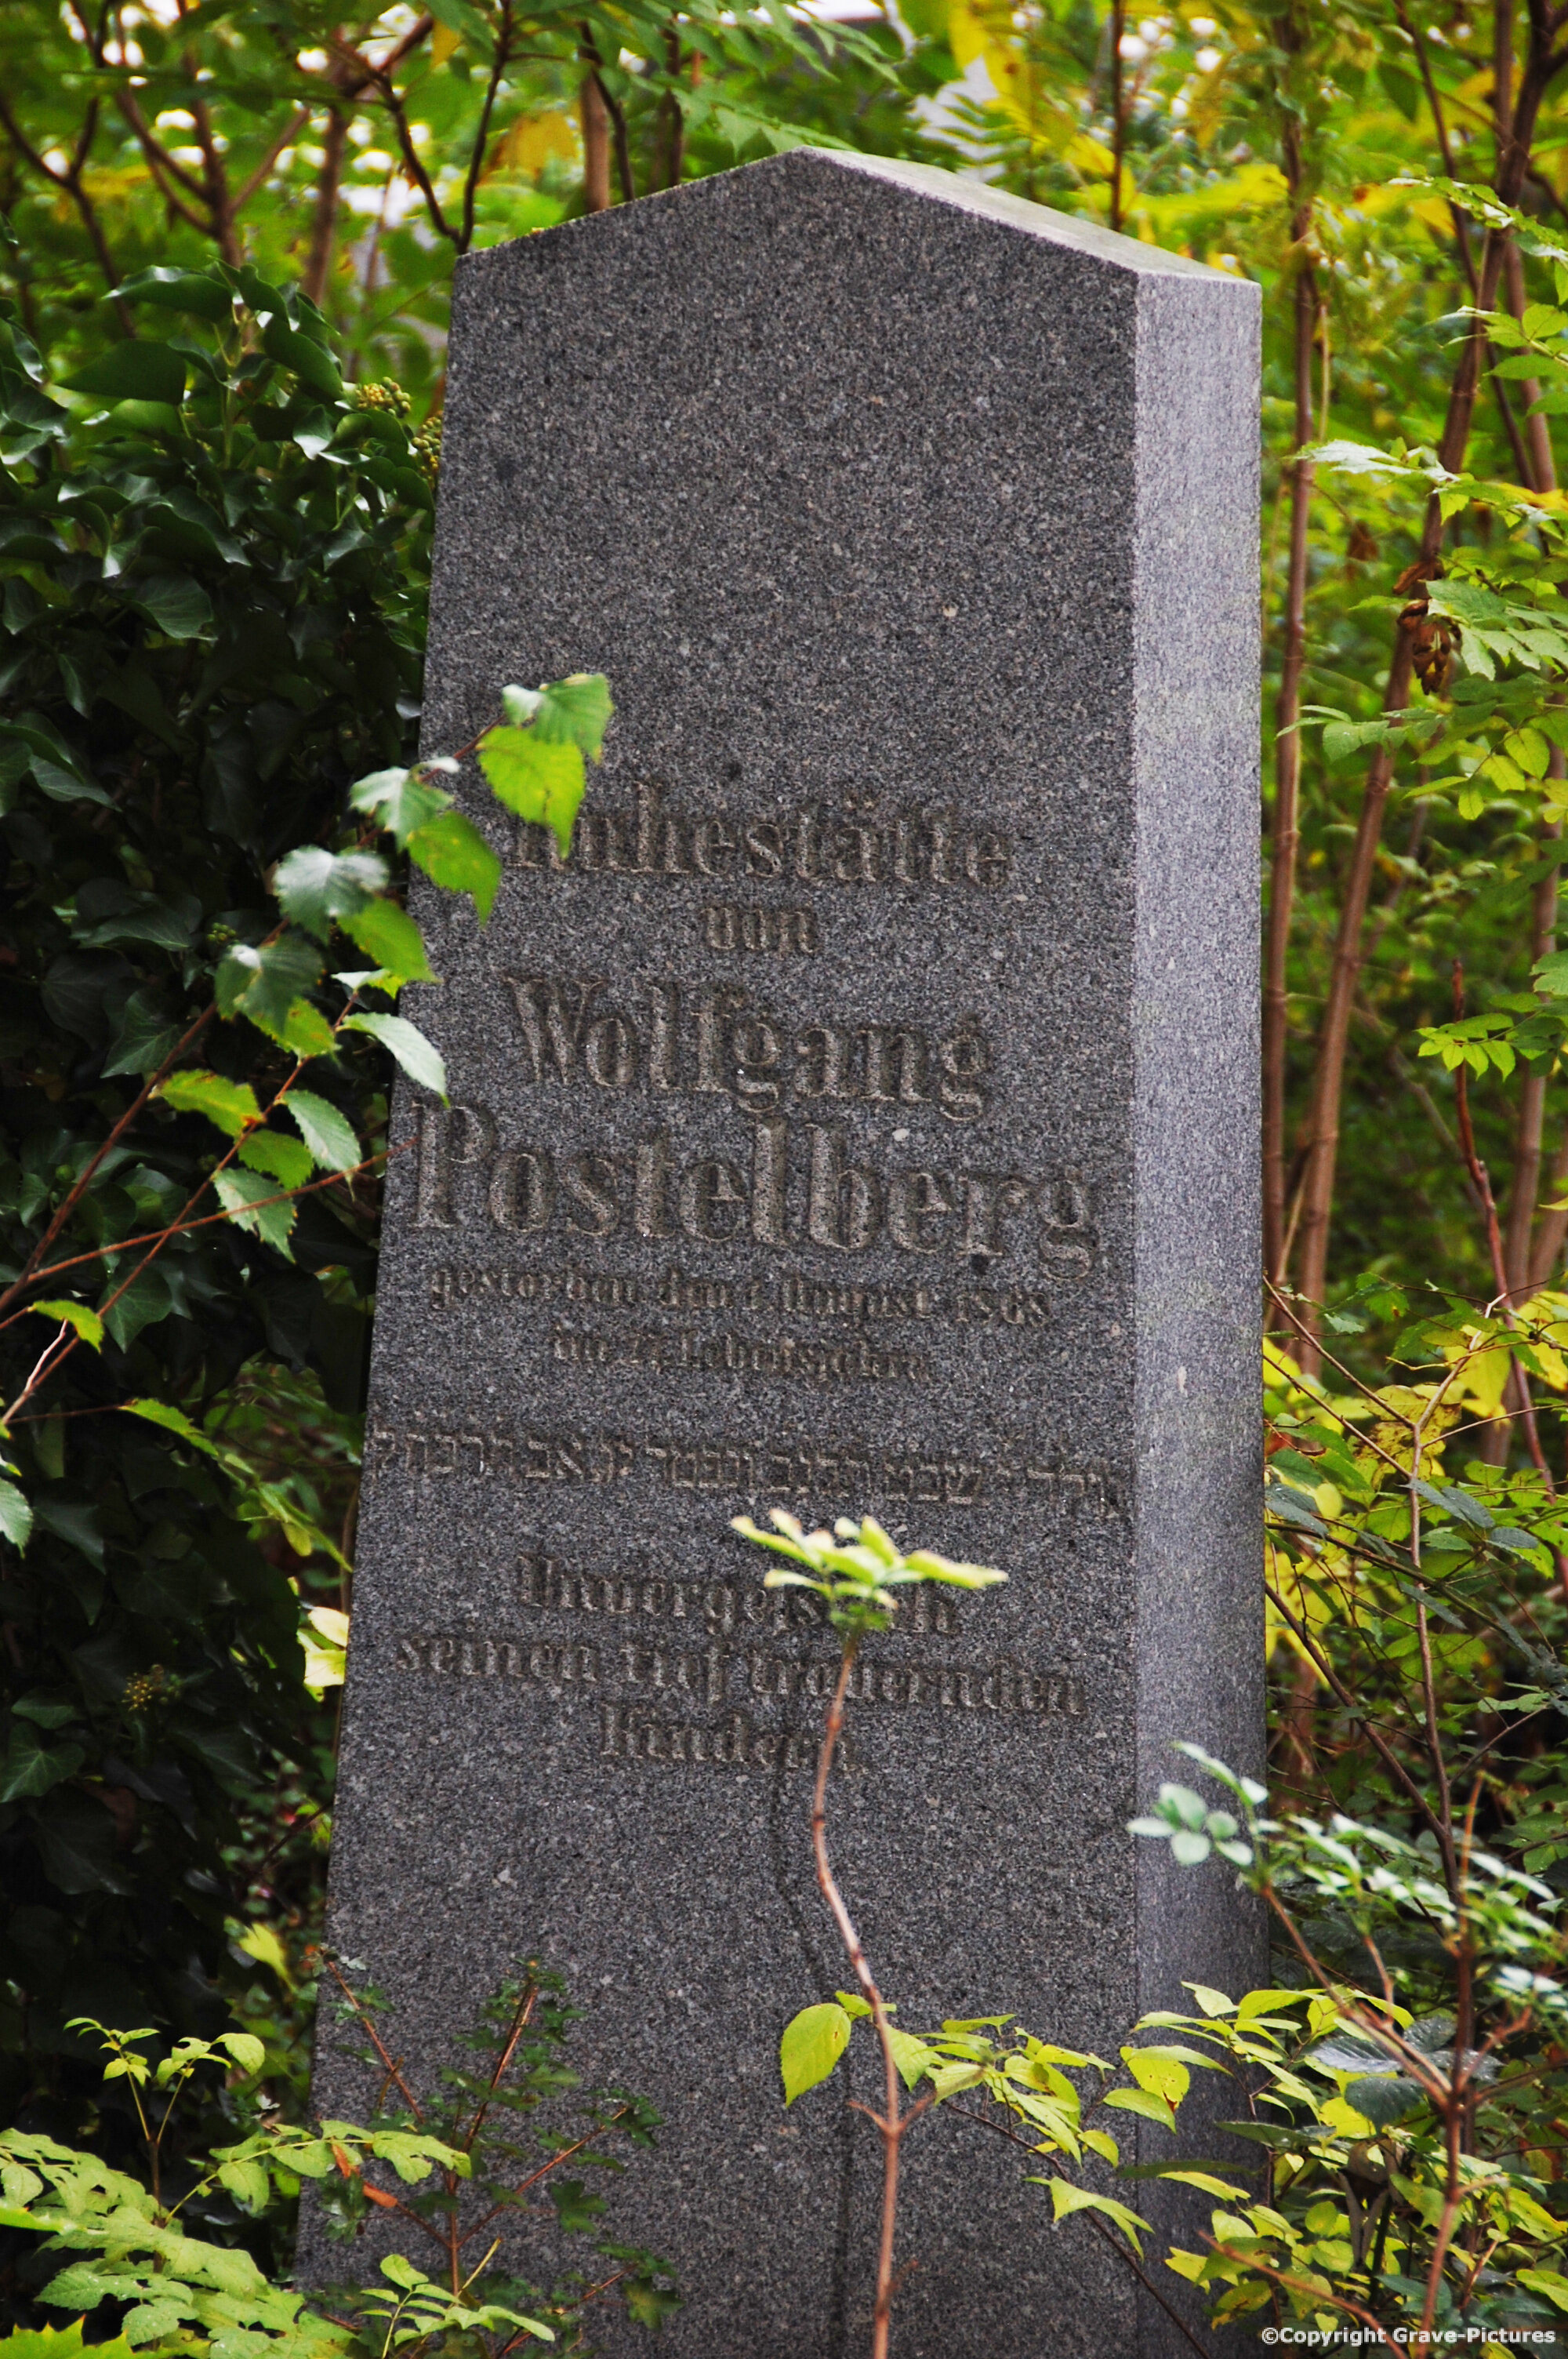 Postelberg Wolfgang